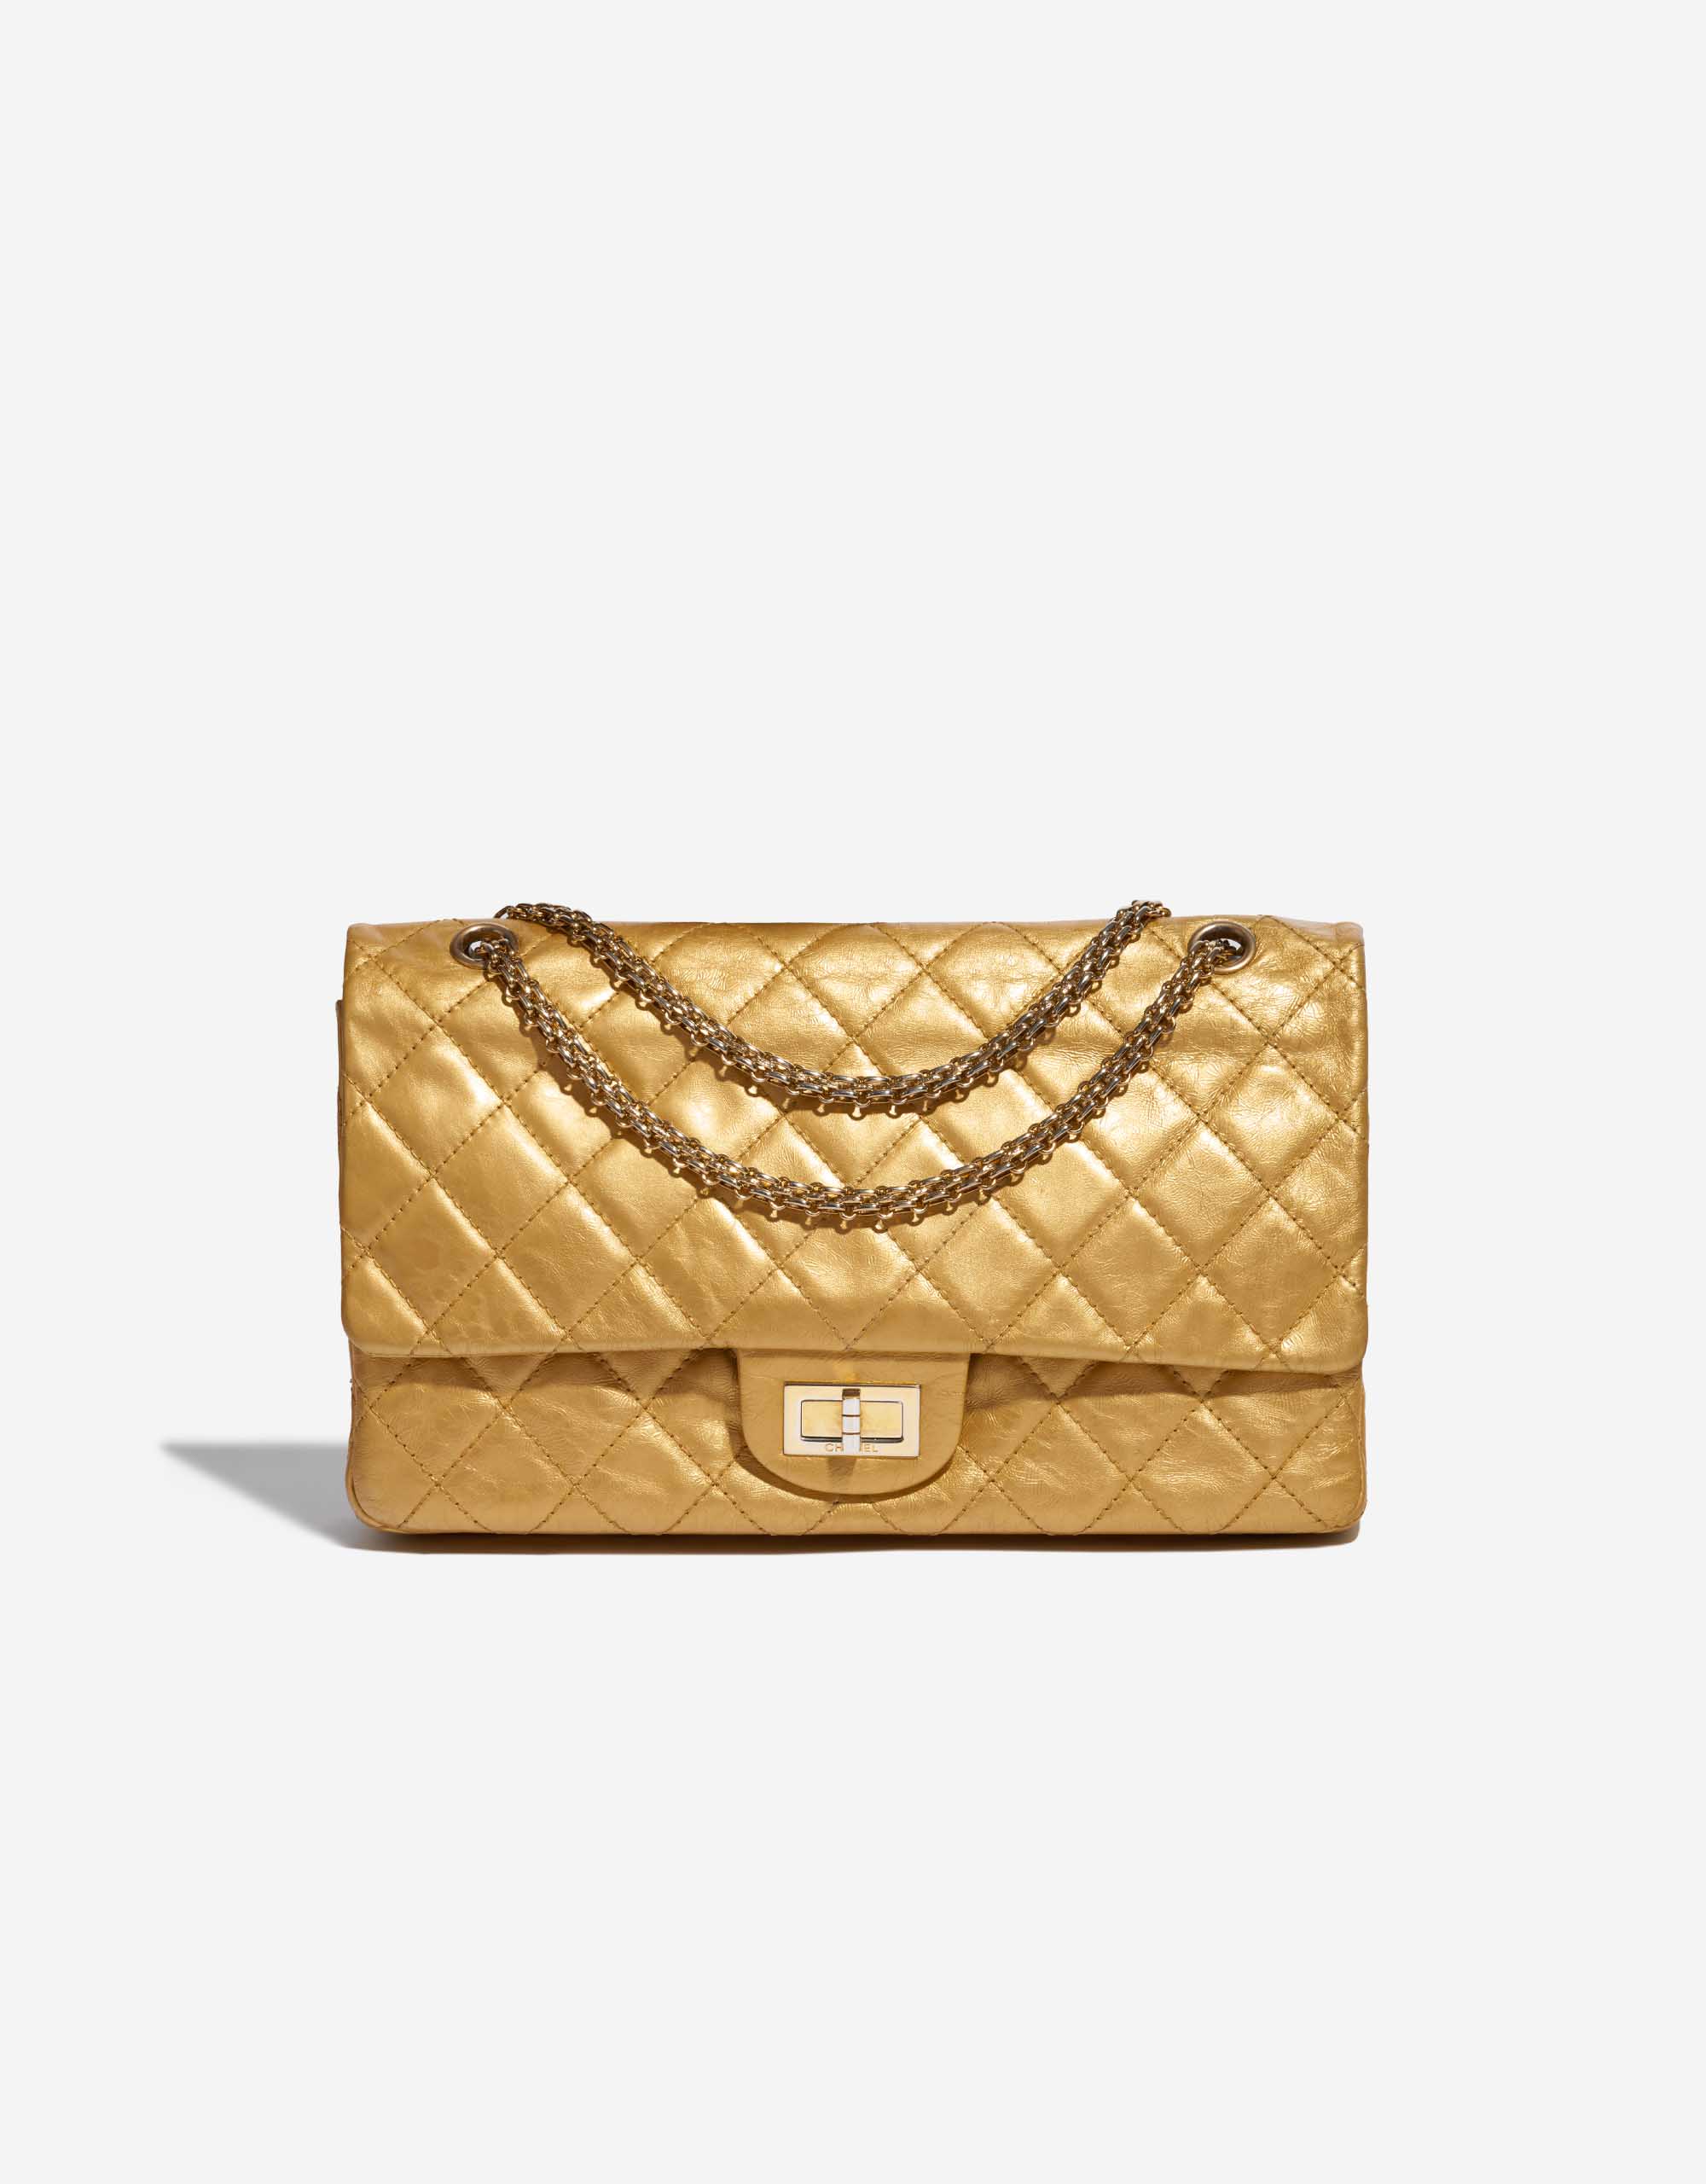 Chanel Maxi Reissue 255 Gold  THE PURSE AFFAIR